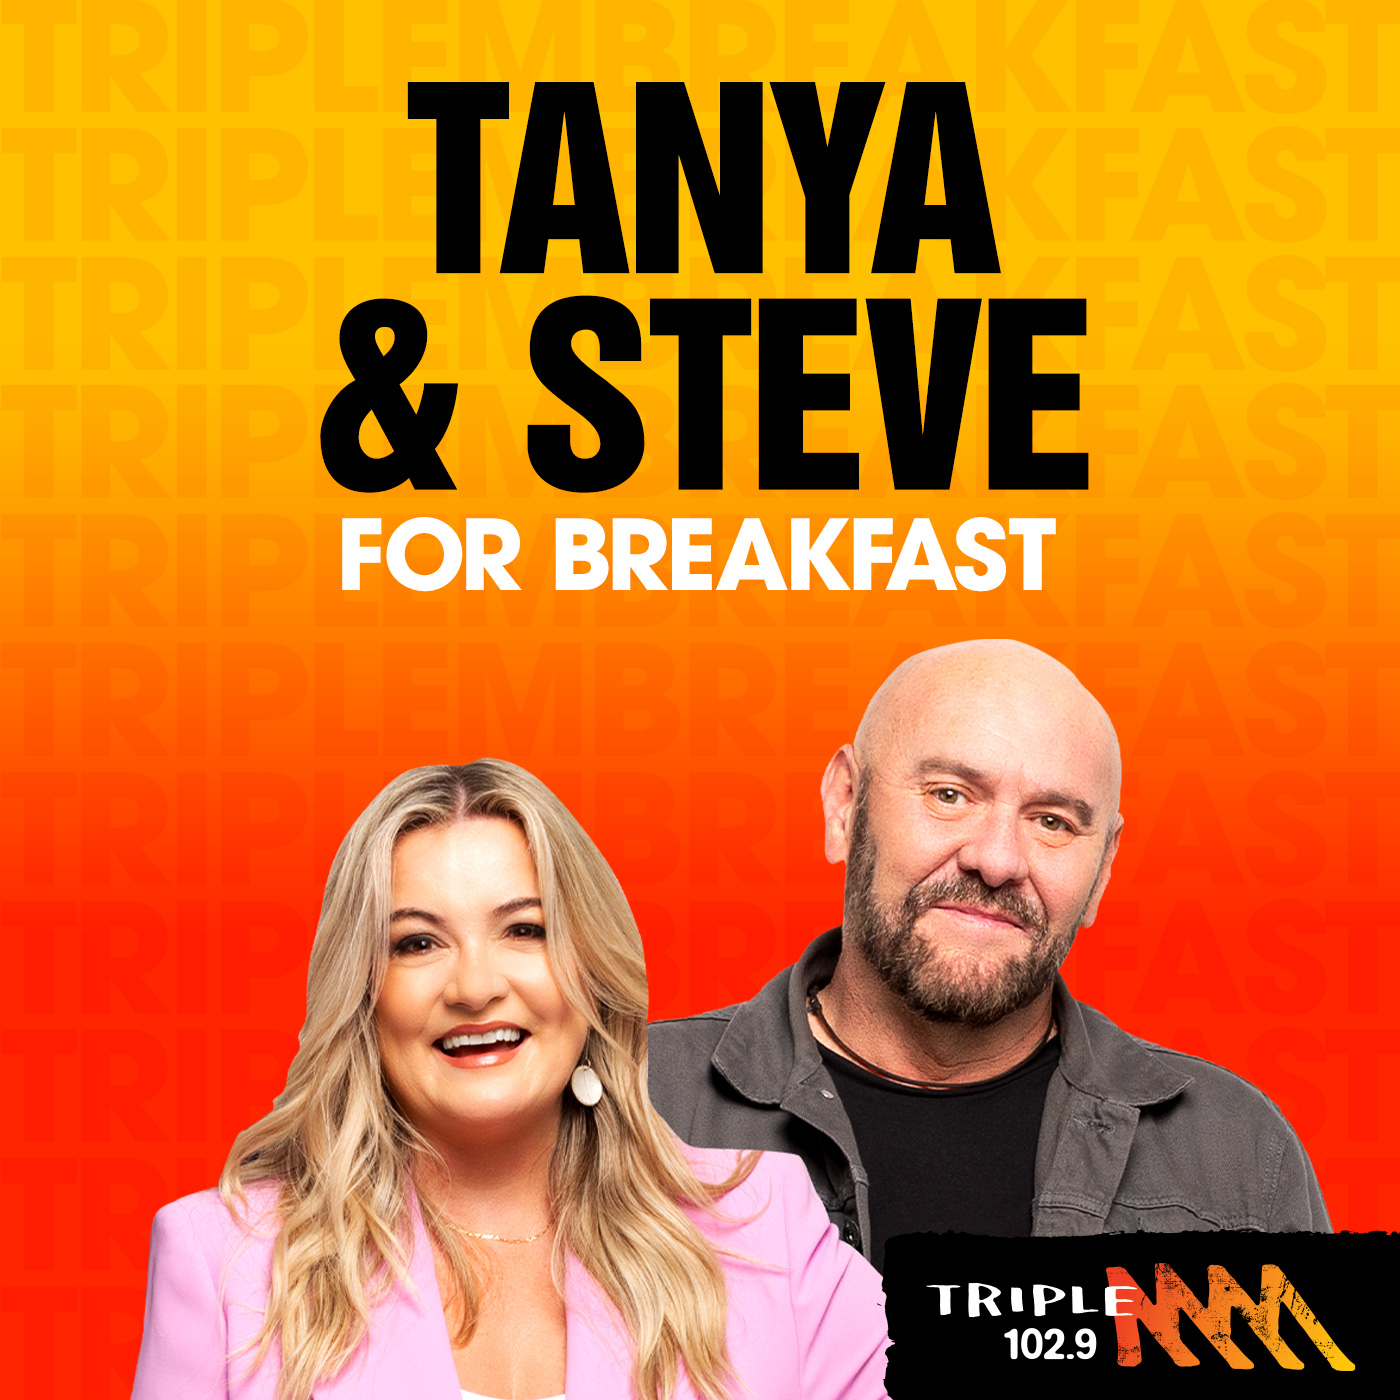 RYZY'S REWIND: Tanya & Steve reveal their 'numbers' [wink wink]